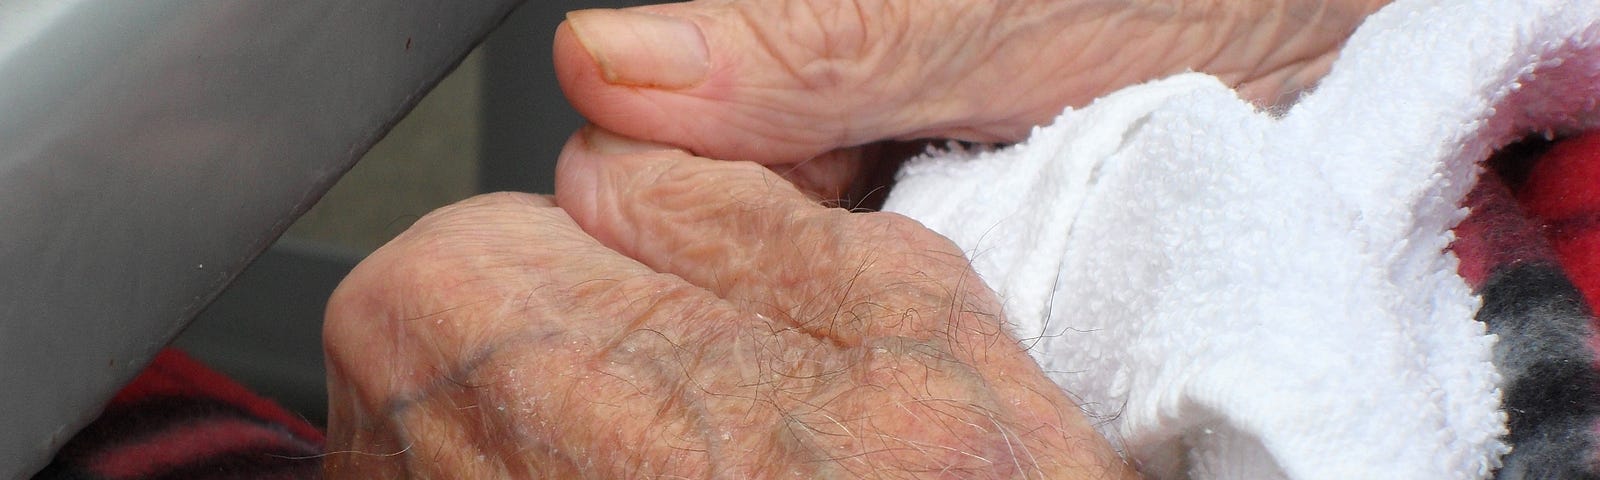 elderly man’s hands in his lap